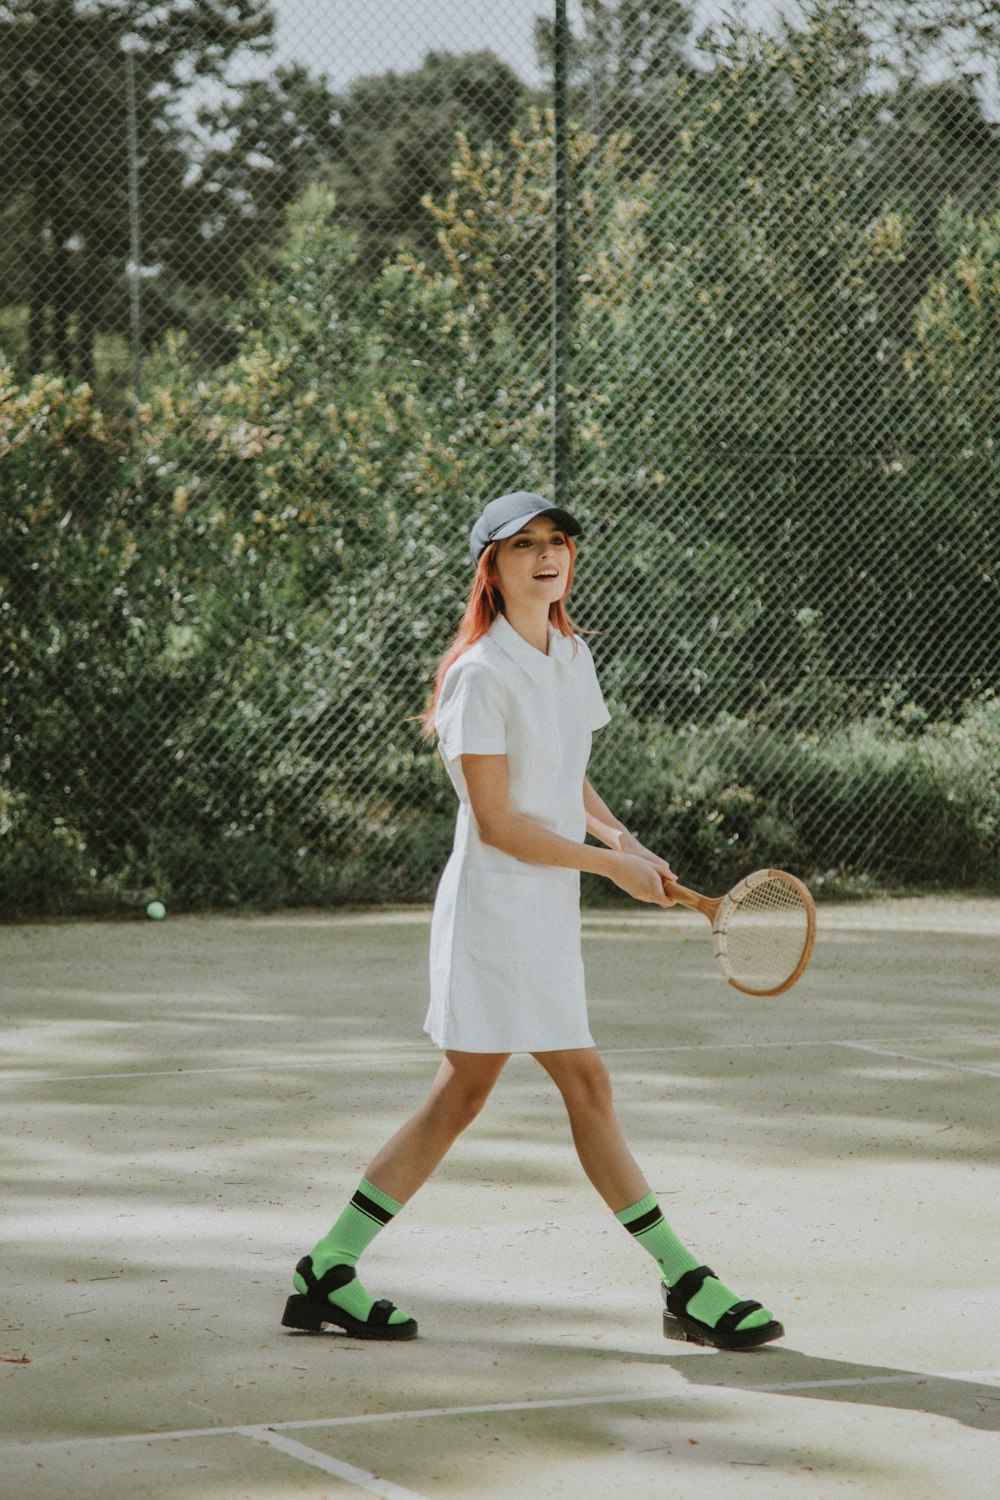 Foto mujer con camisa blanca de manga larga y falda blanca con raqueta de tenis Imagen Francia gratis en Unsplash